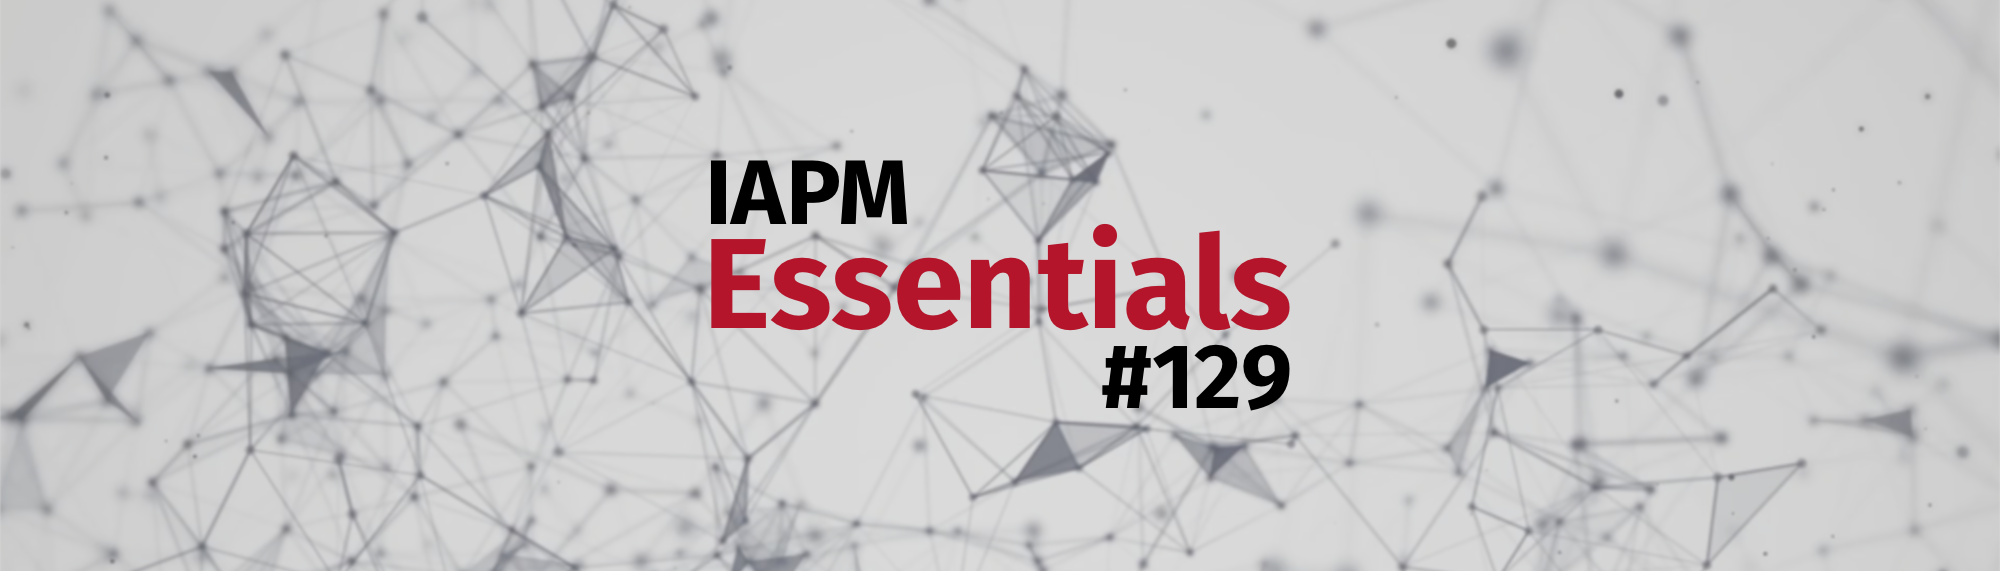 IAPM Essentials #129 - PM news | IAPM